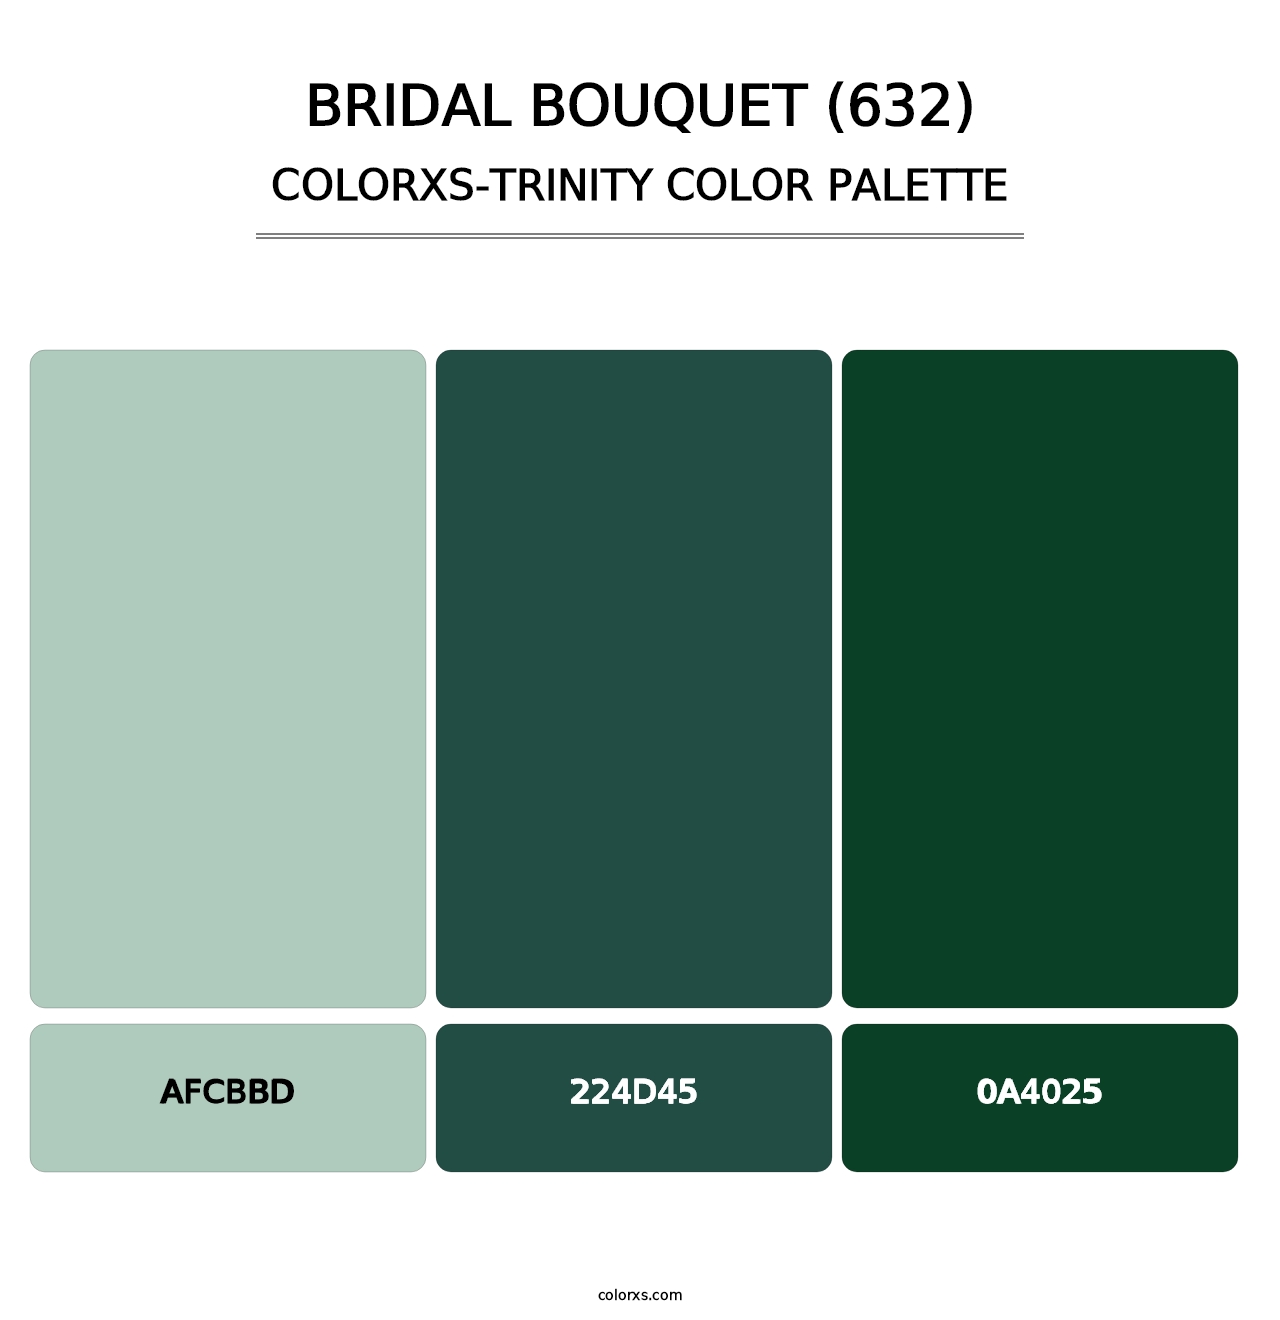 Bridal Bouquet (632) - Colorxs Trinity Palette